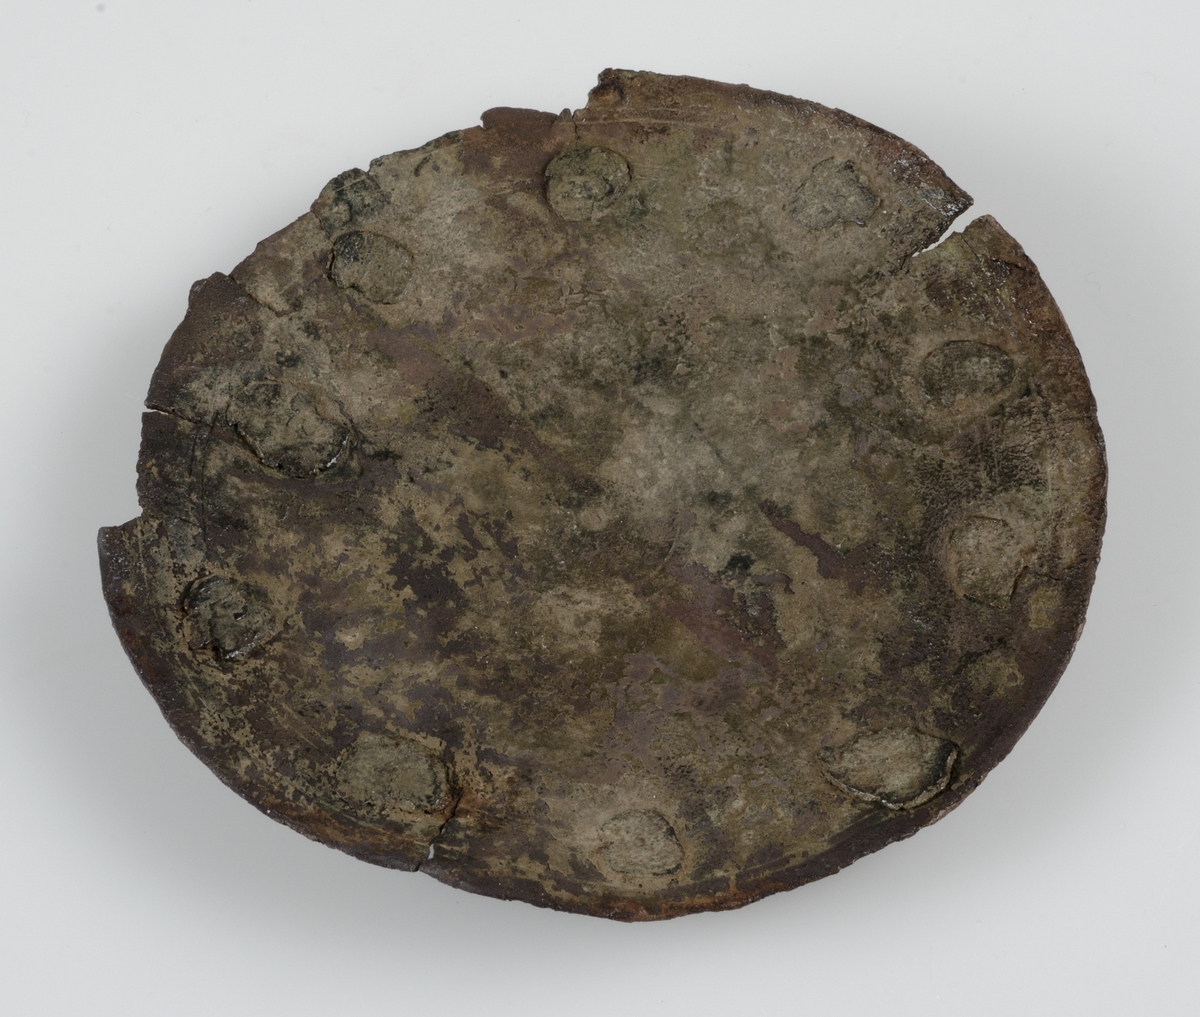 Del av kanna i brons. Cirkelrund med 11 nitar i kanterna. Svagt välvd. Trolig datering tidig islamisk tid, cirka 640-900 enligt vår tideräkning.